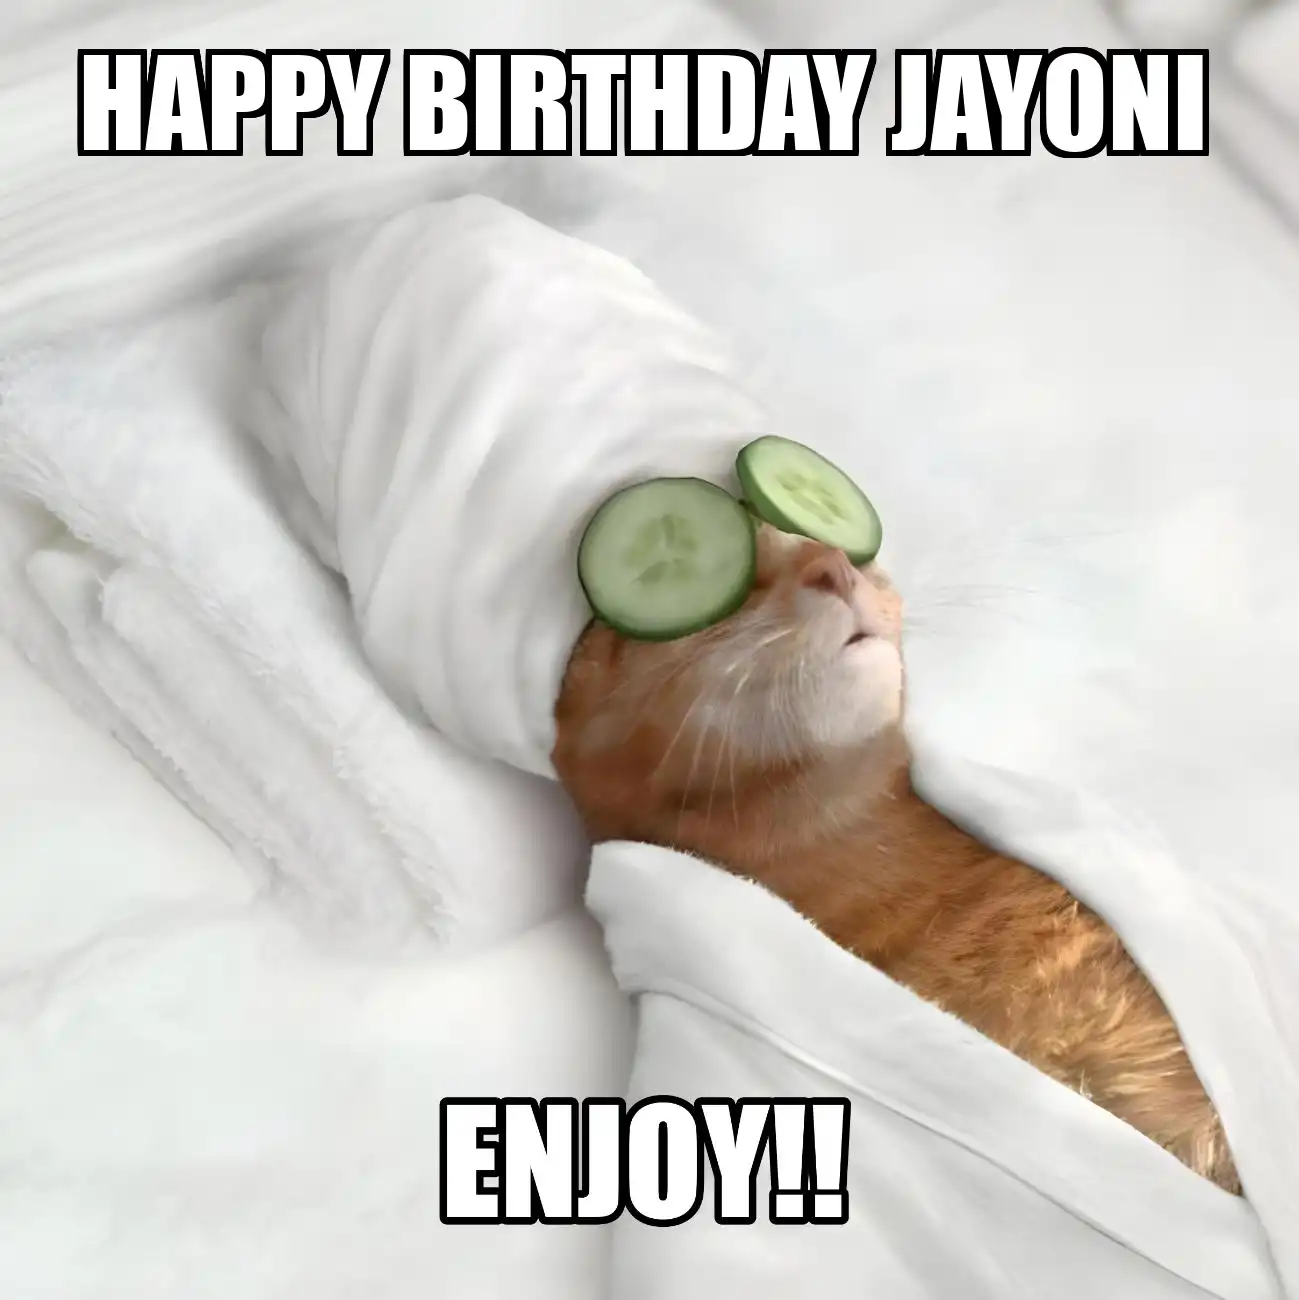 Happy Birthday Jayoni Enjoy Cat Meme